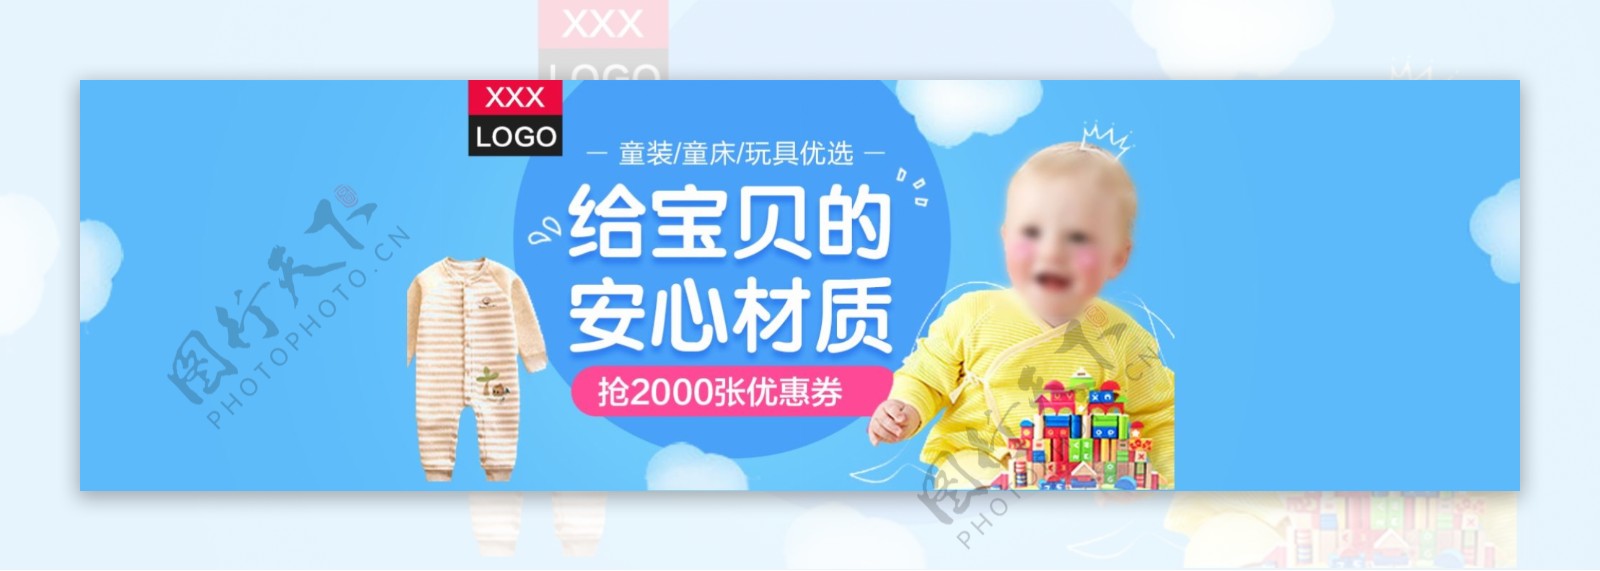 母婴海报婴儿服装海报婴儿用品